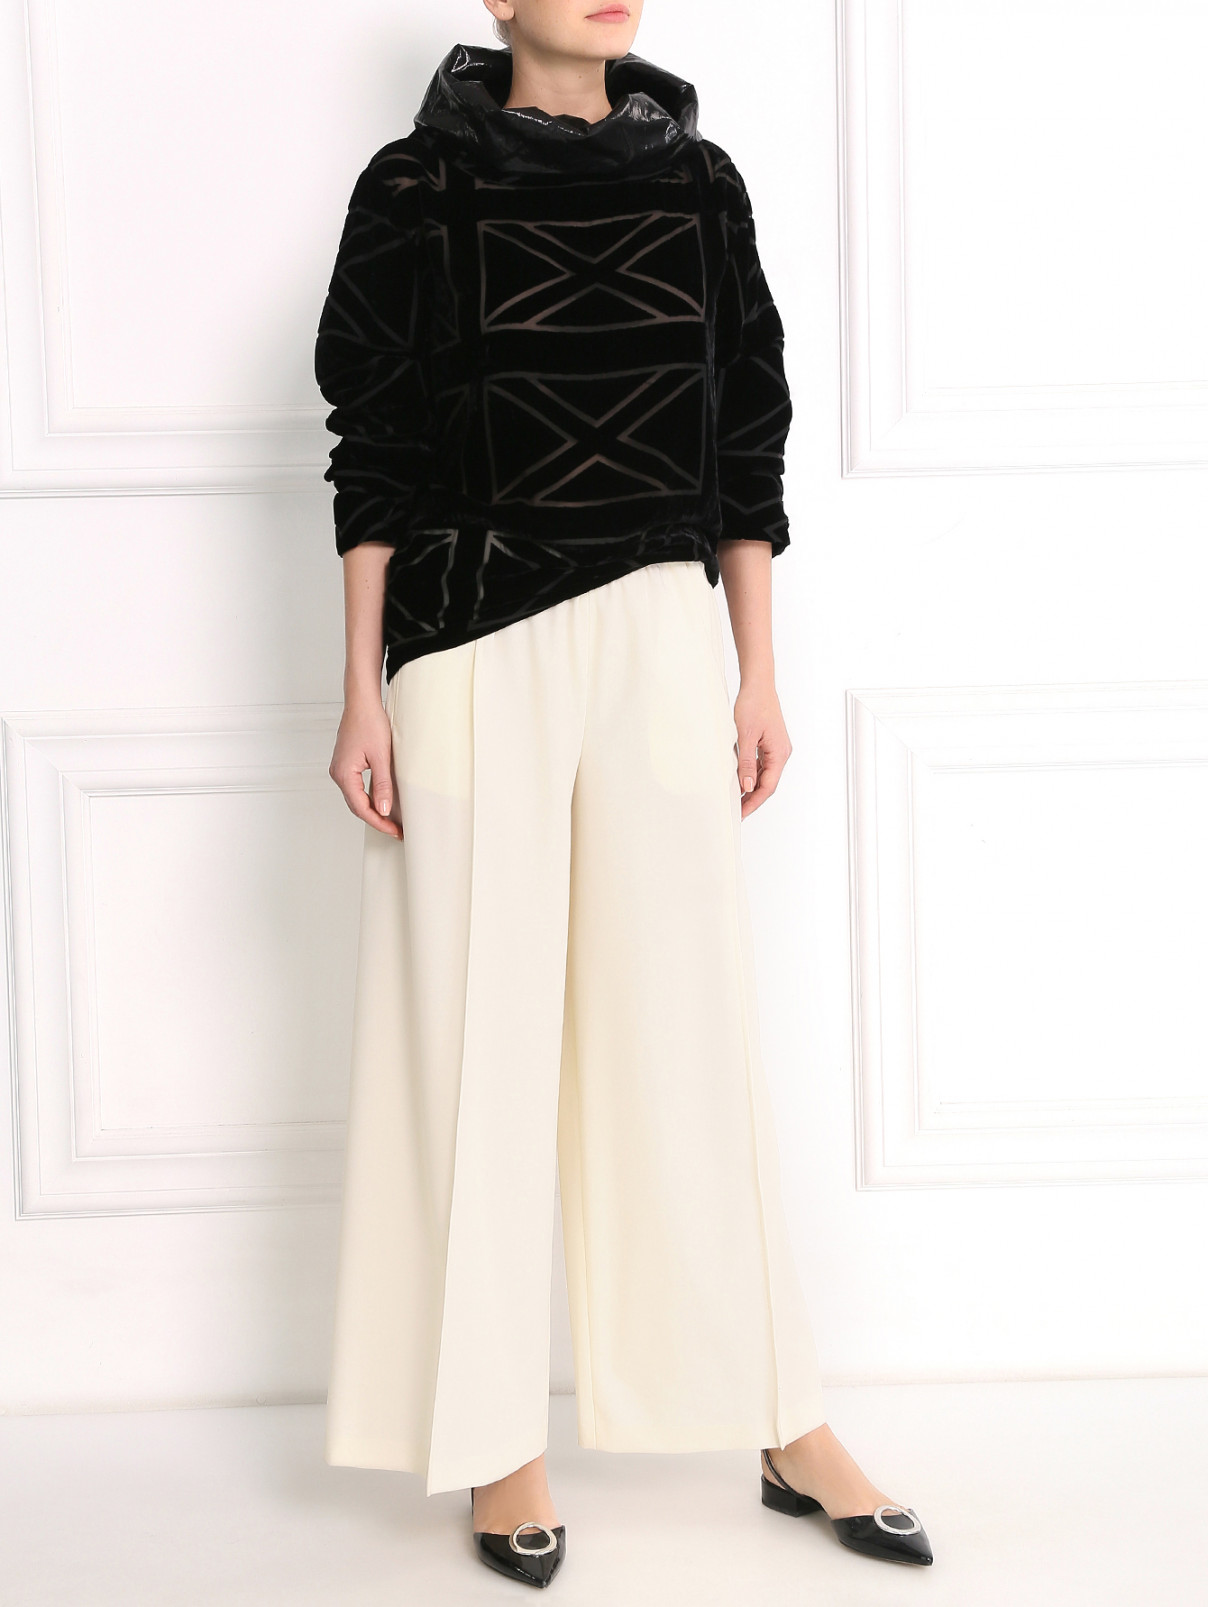 Блуза из бархата с объемным воротом Jean Paul Gaultier  –  Модель Общий вид  – Цвет:  Черный